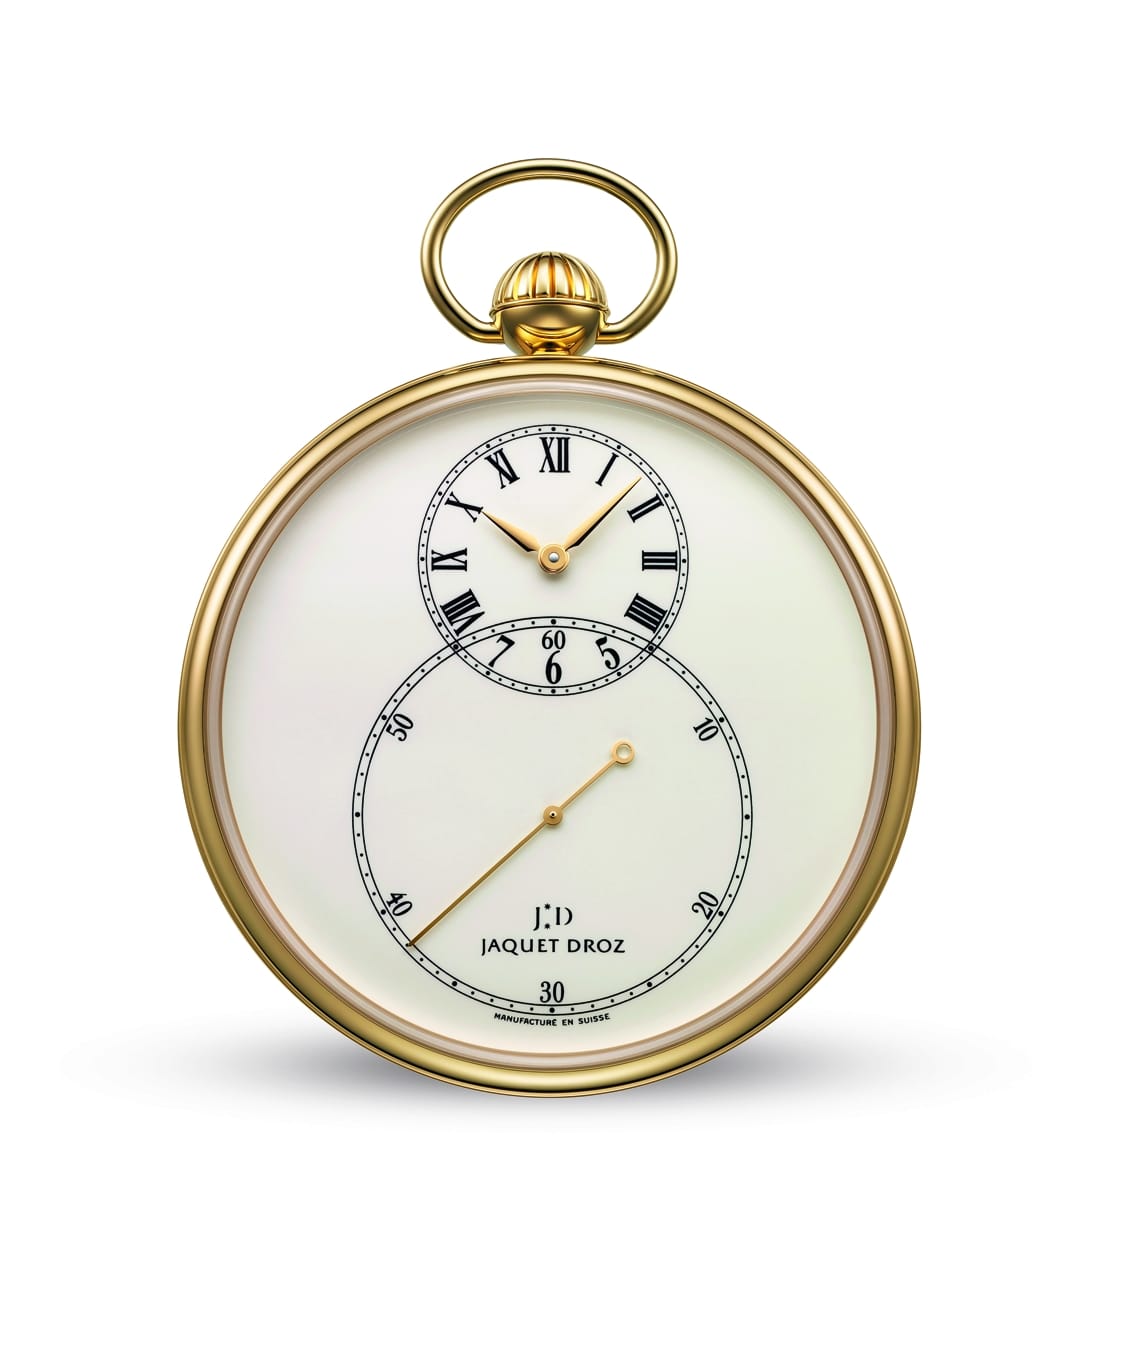 Die "The Pocket Watch Ivory Enamel" von Jaquet Droz gehört der Kollektion Legend Geneva an. Handaufzug, Gehäuse aus Gelbgold, elfenbeinfarbenes Grand-Feu-Email-Zifferblatt. Ab 27.700 Euro.